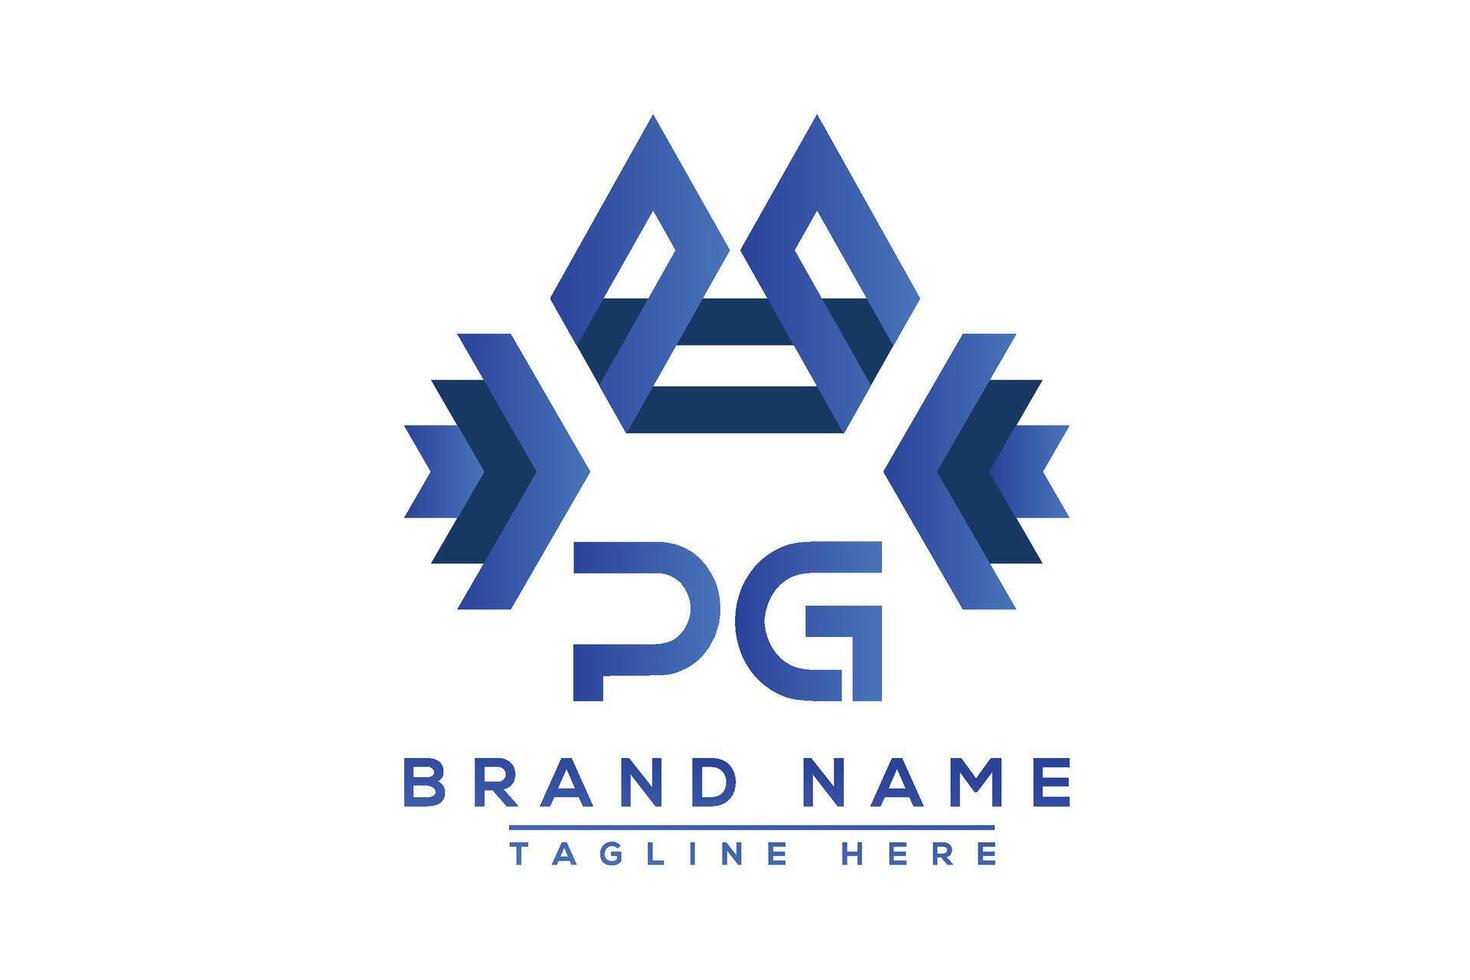 letra pg azul logo diseño. vector logo diseño para negocio.